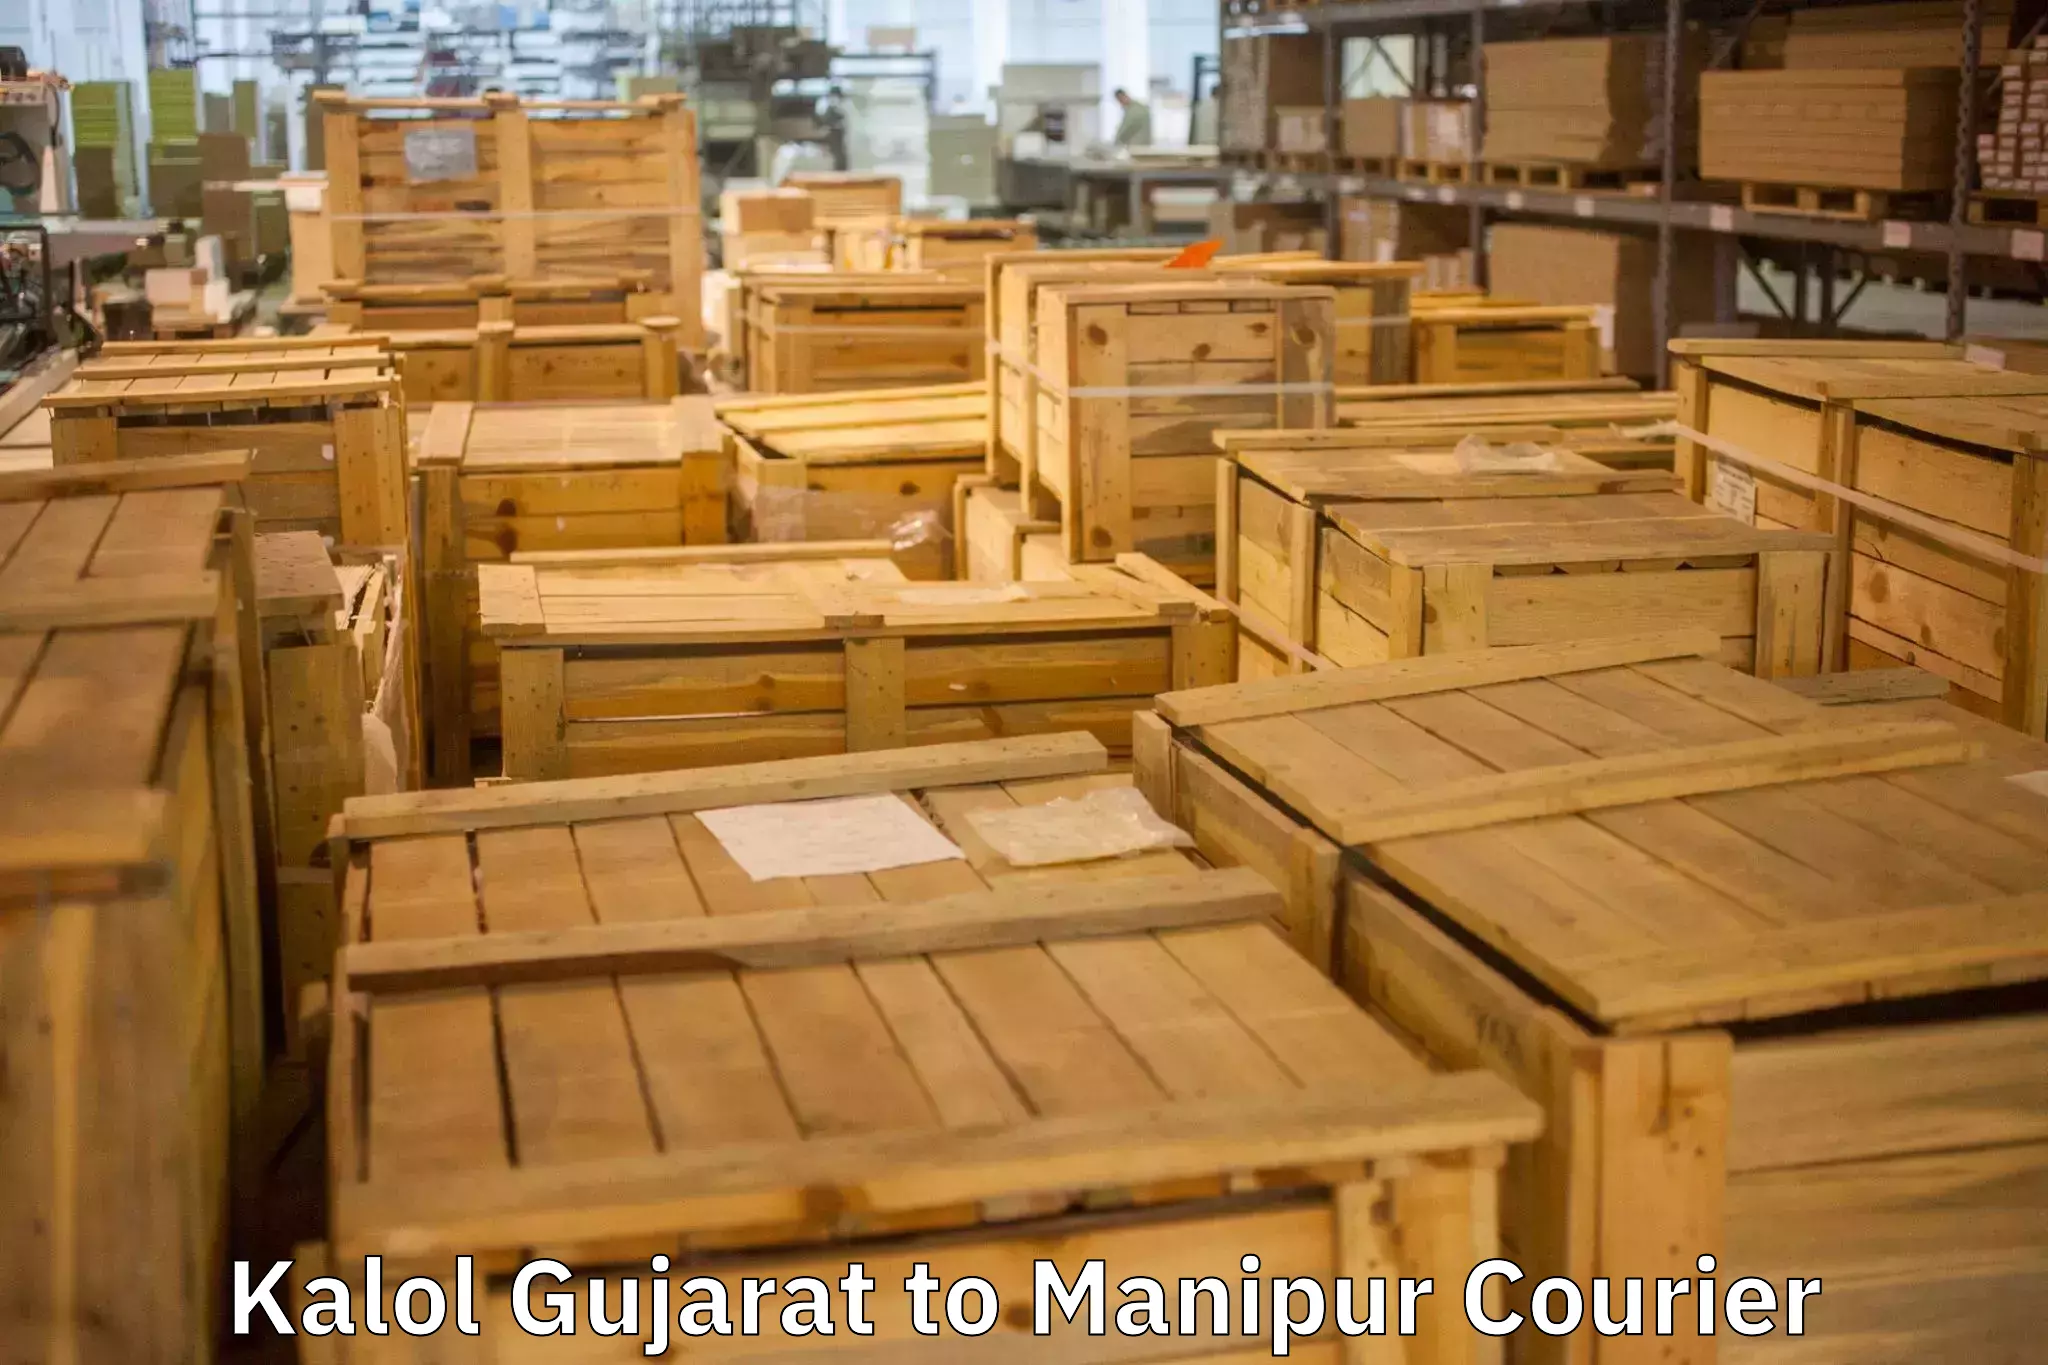 Furniture transport specialists Kalol Gujarat to Manipur